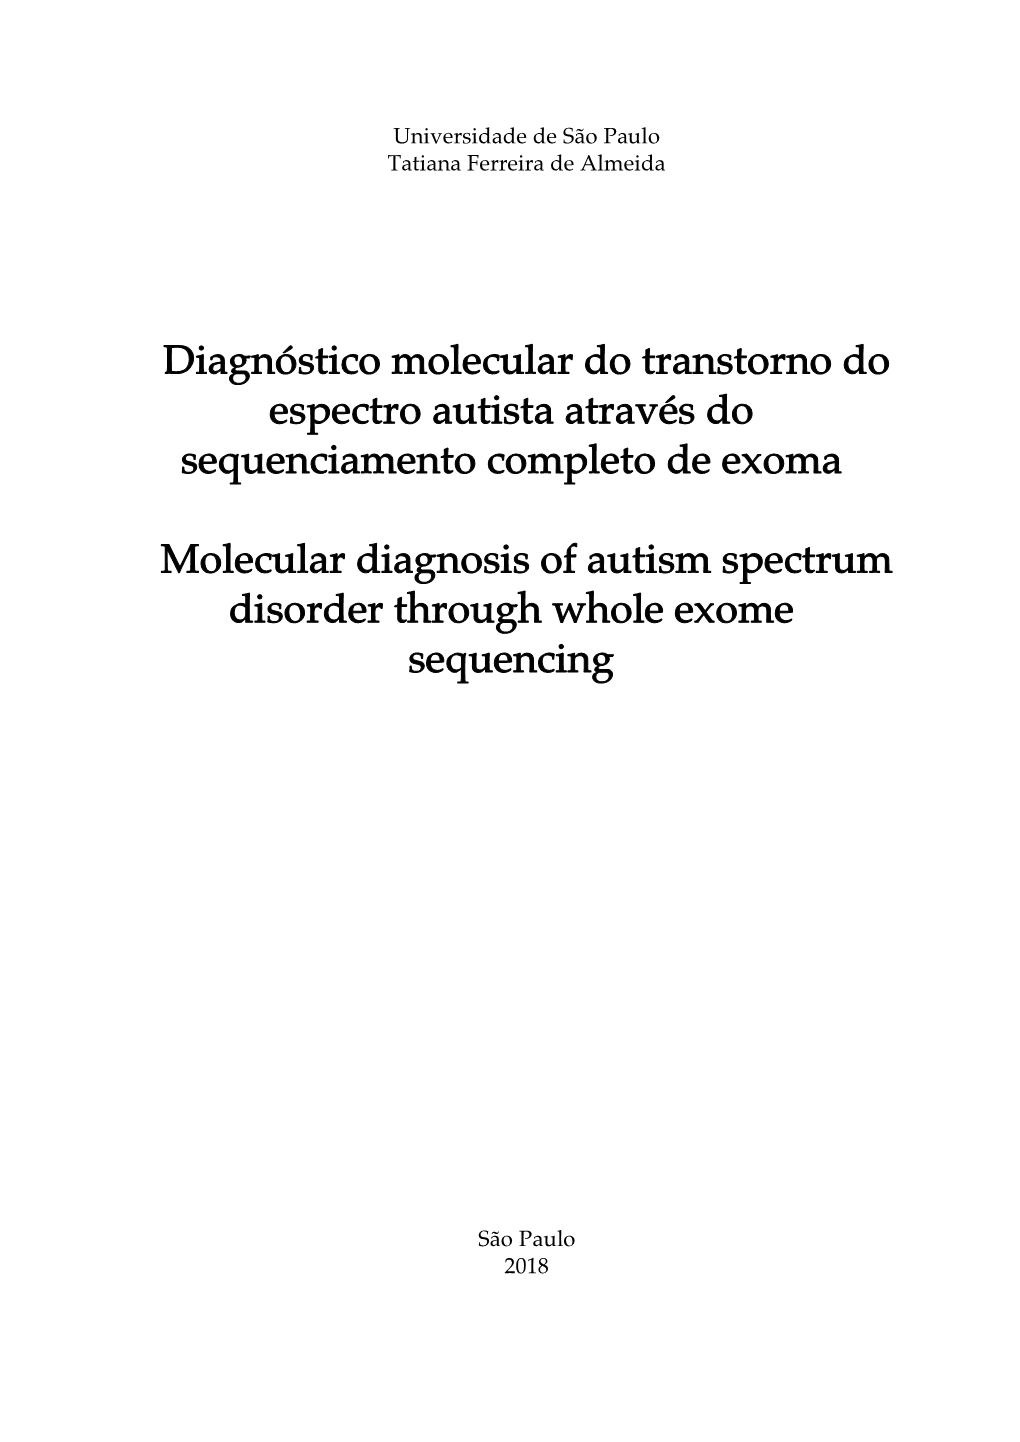 Diagnóstico Molecular Do Transtorno Do Espectro Autista Através Do Sequenciamento Completo De Exoma